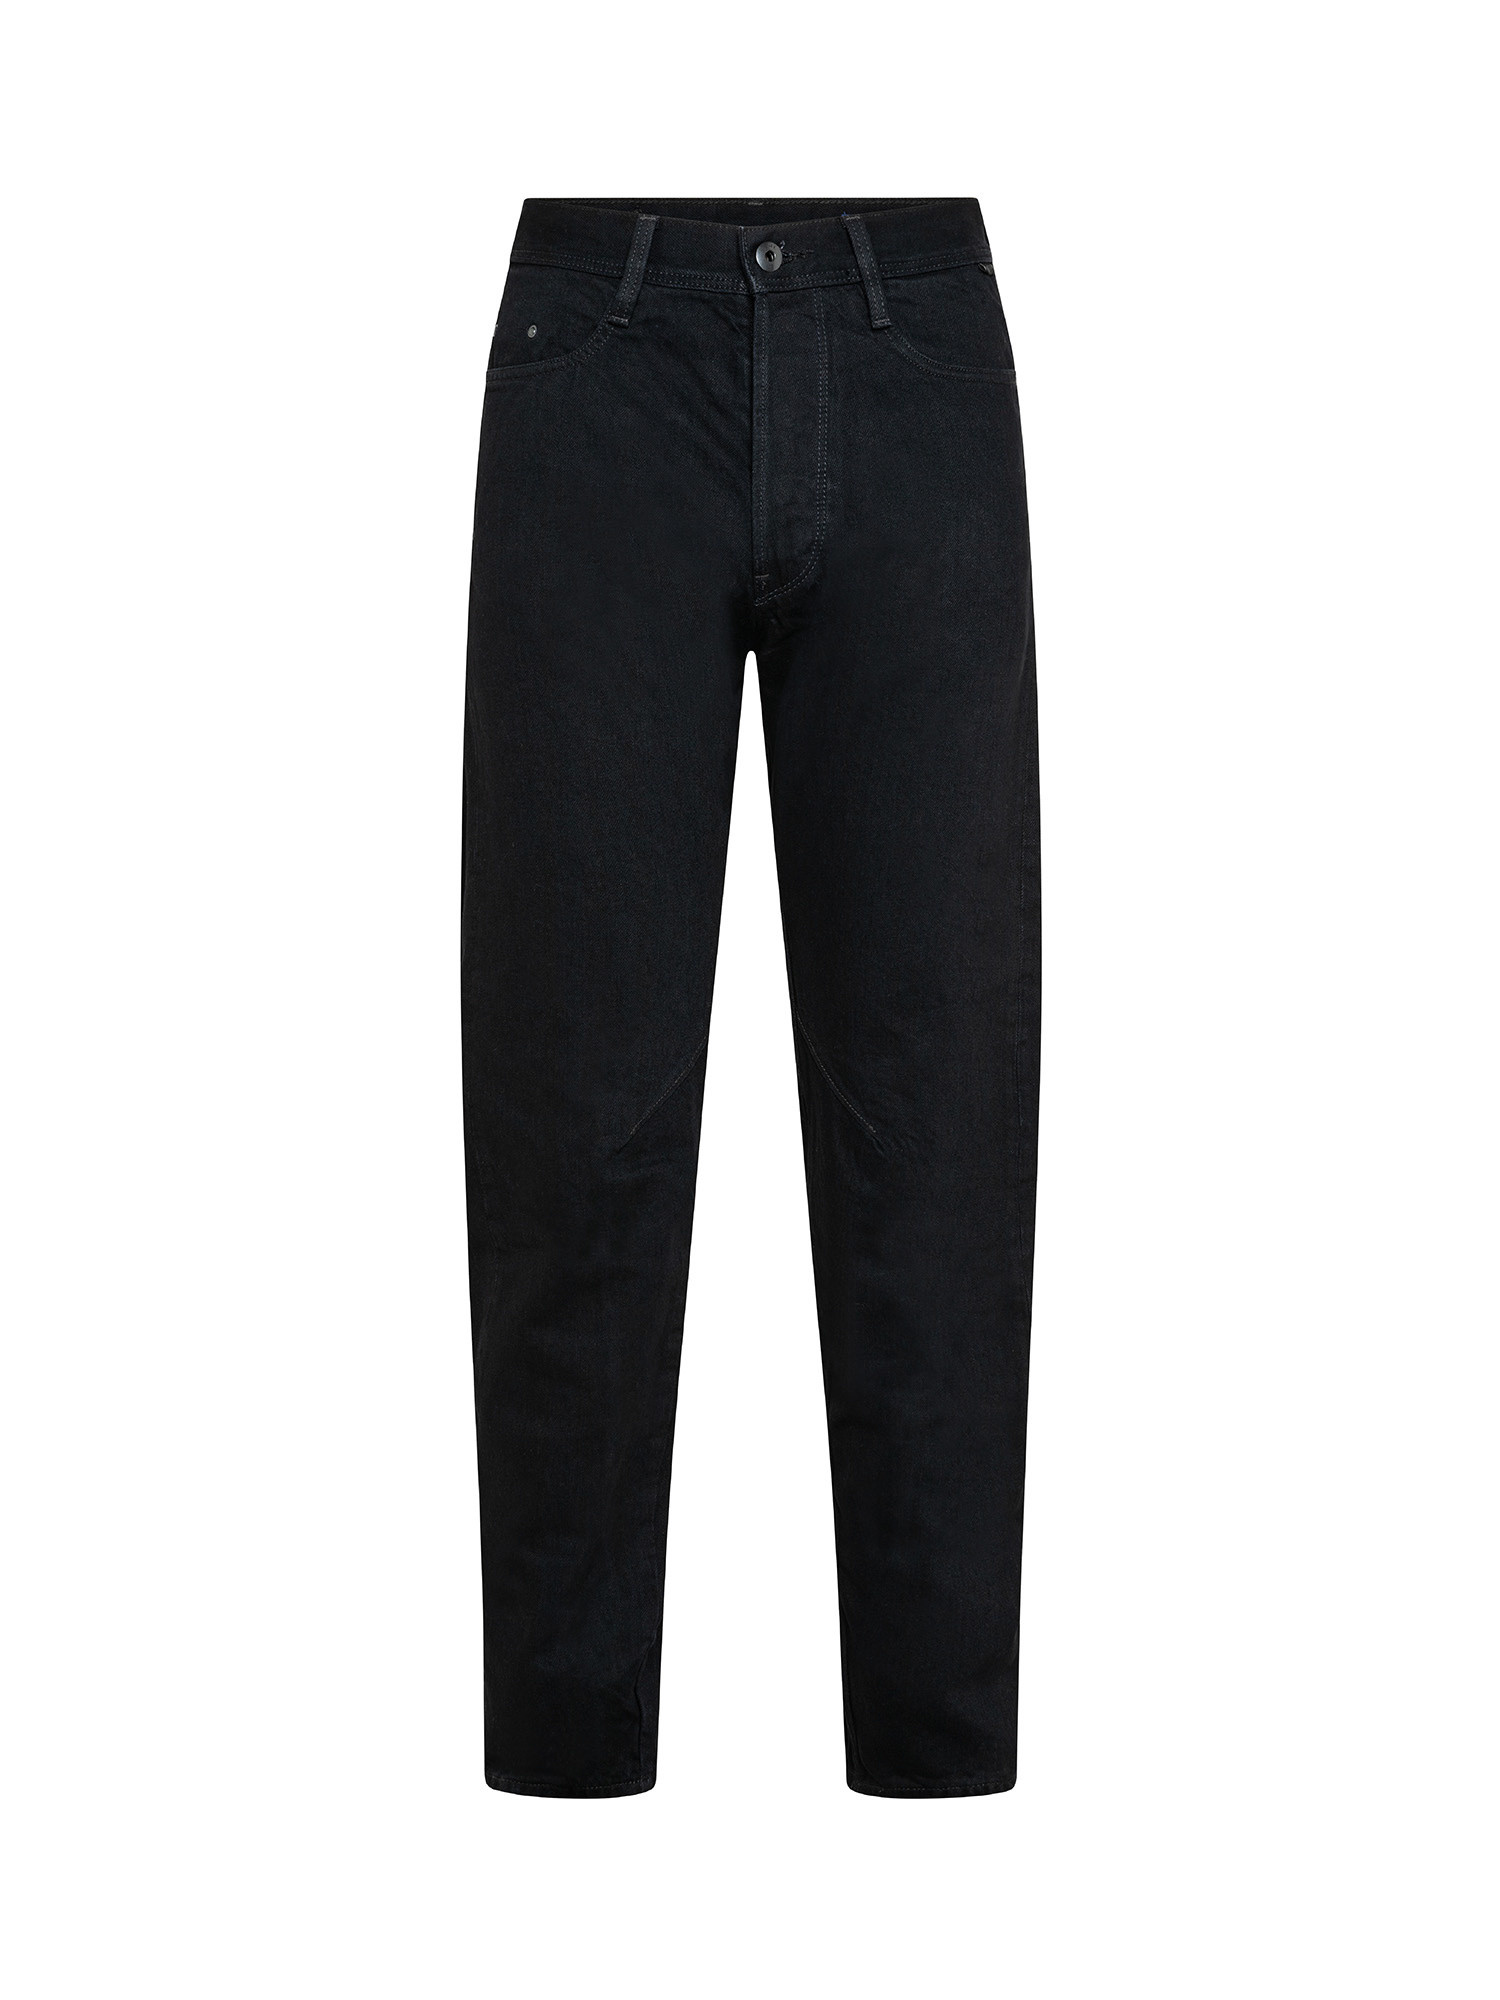 G-Star Five pocket jeans, Black, large image number 0